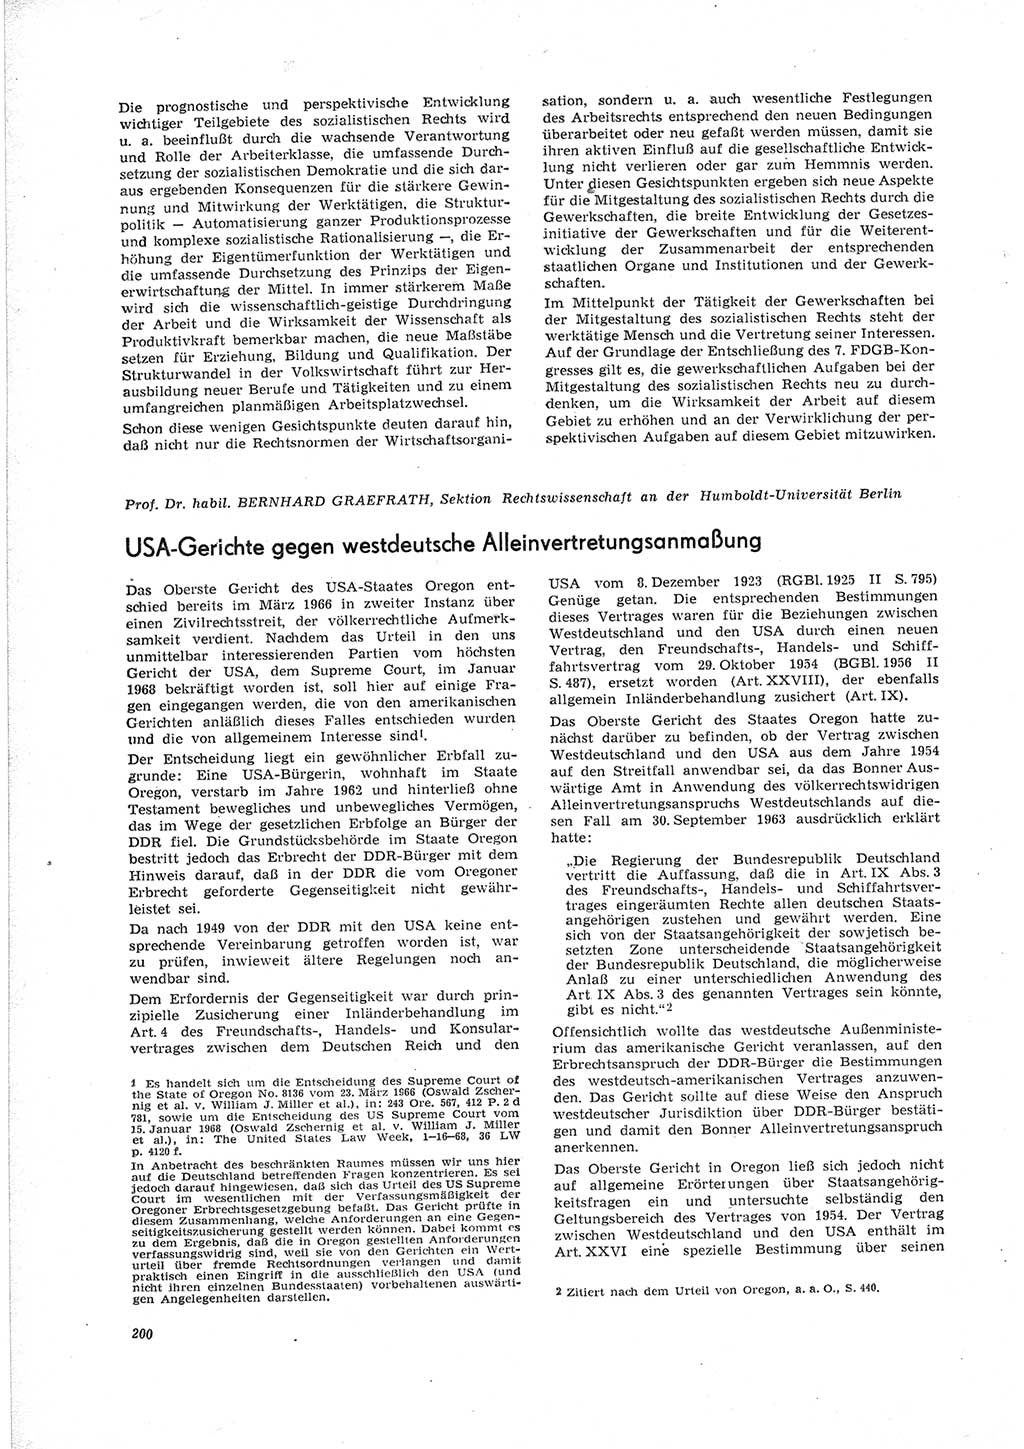 Neue Justiz (NJ), Zeitschrift für Recht und Rechtswissenschaft [Deutsche Demokratische Republik (DDR)], 23. Jahrgang 1969, Seite 200 (NJ DDR 1969, S. 200)